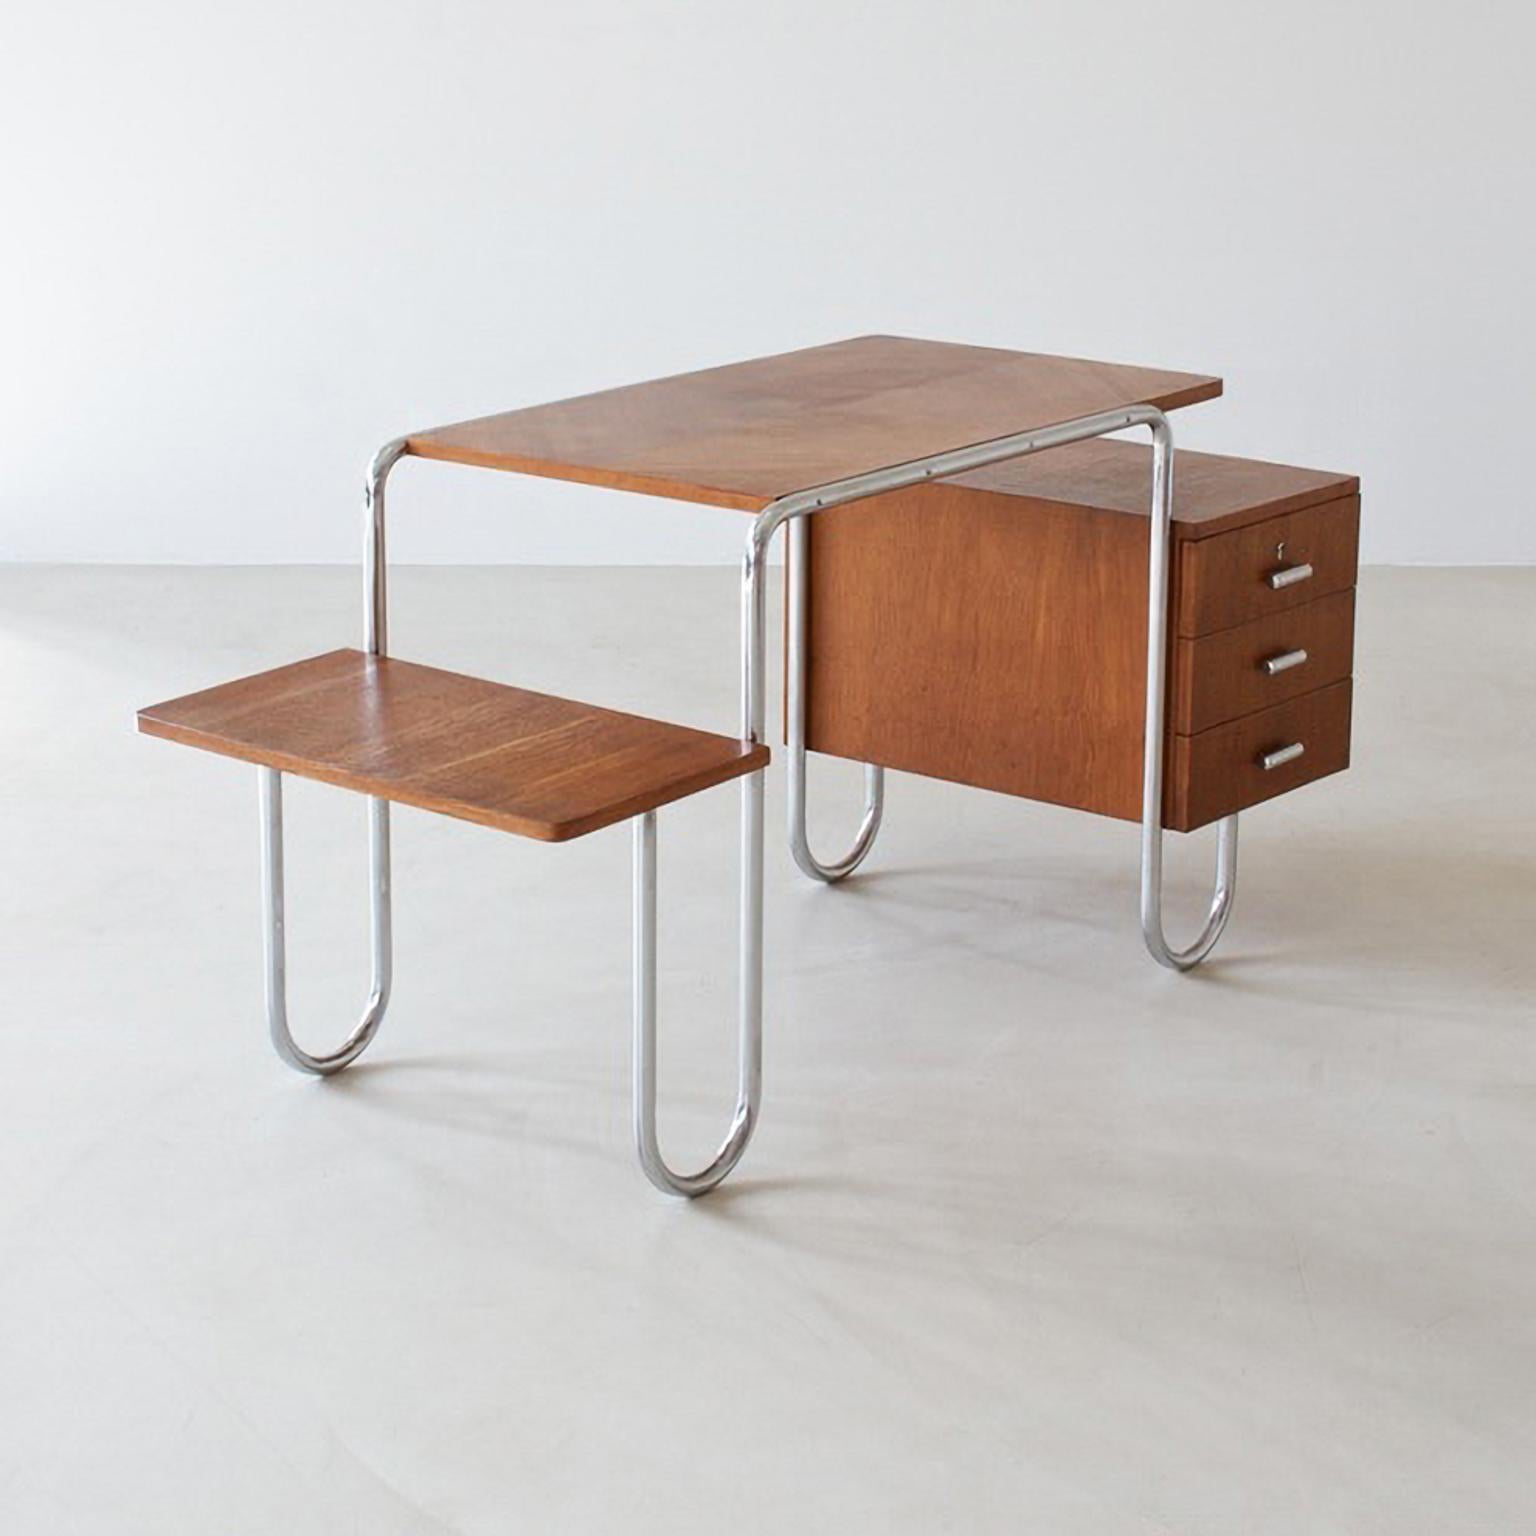 Bauhaus-Schreibtisch aus Stahlrohr, entworfen von André Lurçat und wahrscheinlich von Thonet hergestellt. Verchromtes Stahlrohr, gebeiztes Eichenfurnier, um 1930